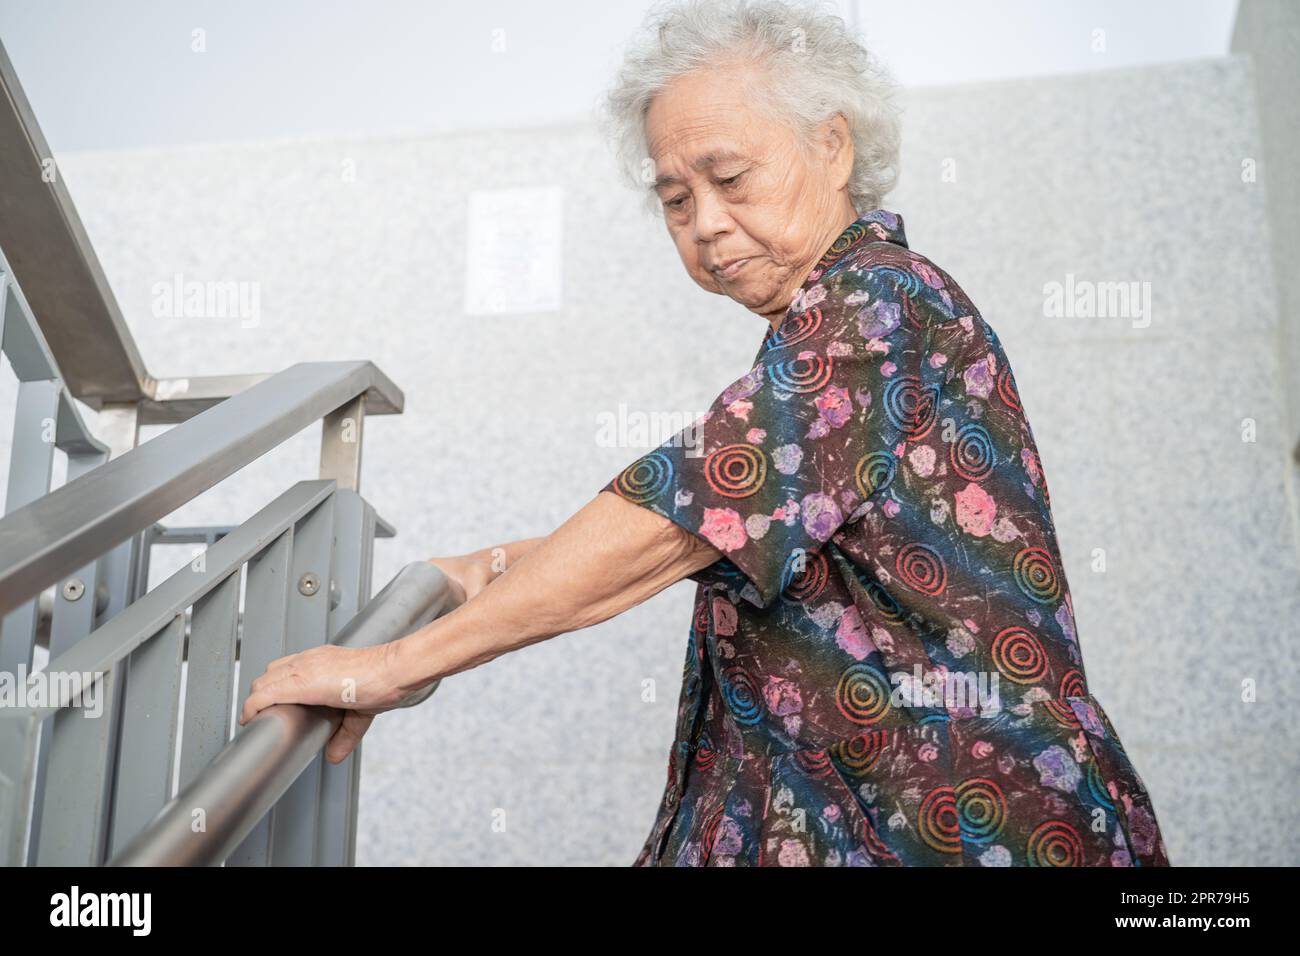 Asiatische ältere oder ältere alte Dame Frau Patient verwenden Griff an Treppen Sicherheitsunterstützung im Gebäude, gesund starke medizinische Konzept. Stockfoto